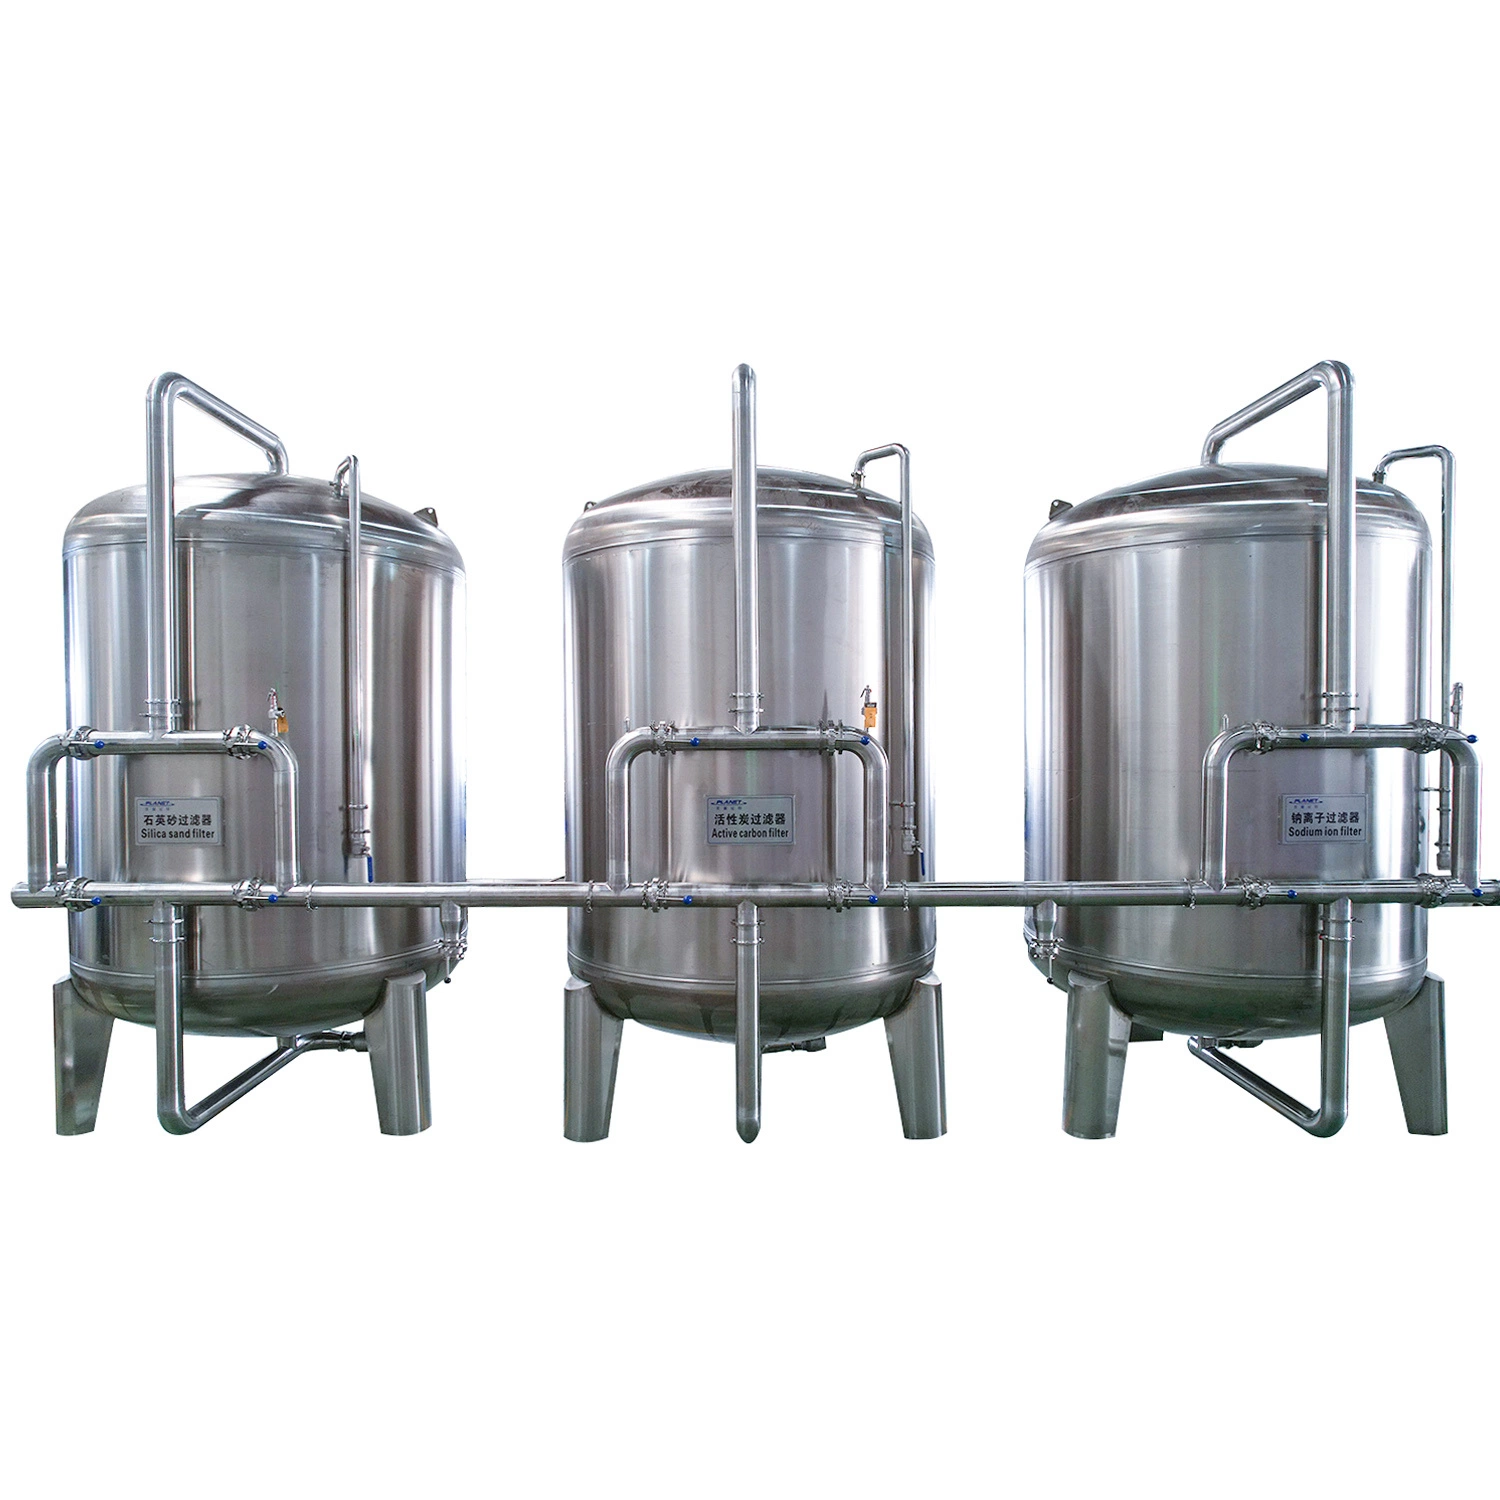 Sistema de purificación automática de filtro de agua RO completo equipamiento de la máquina de producción de mineral de botella de agua de bebida pura planta de tratamiento de agua ósmosis inversa.